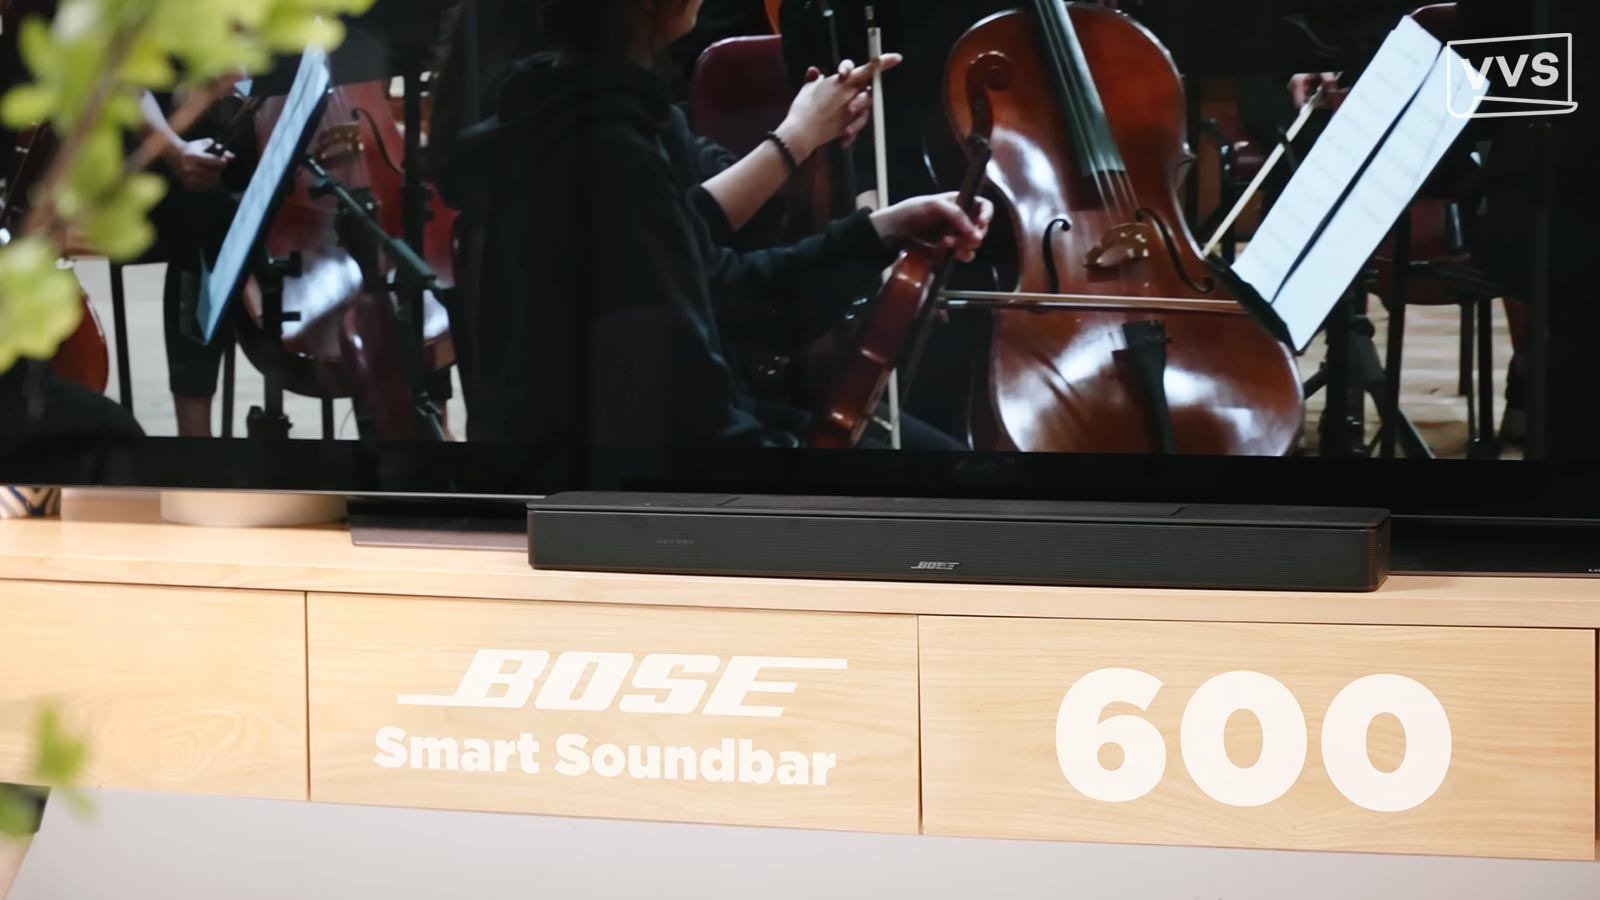 Đánh giá Bose Smart Soundbar 600: Nâng cấp chất lượng âm thanh TV với giá 13 triệu